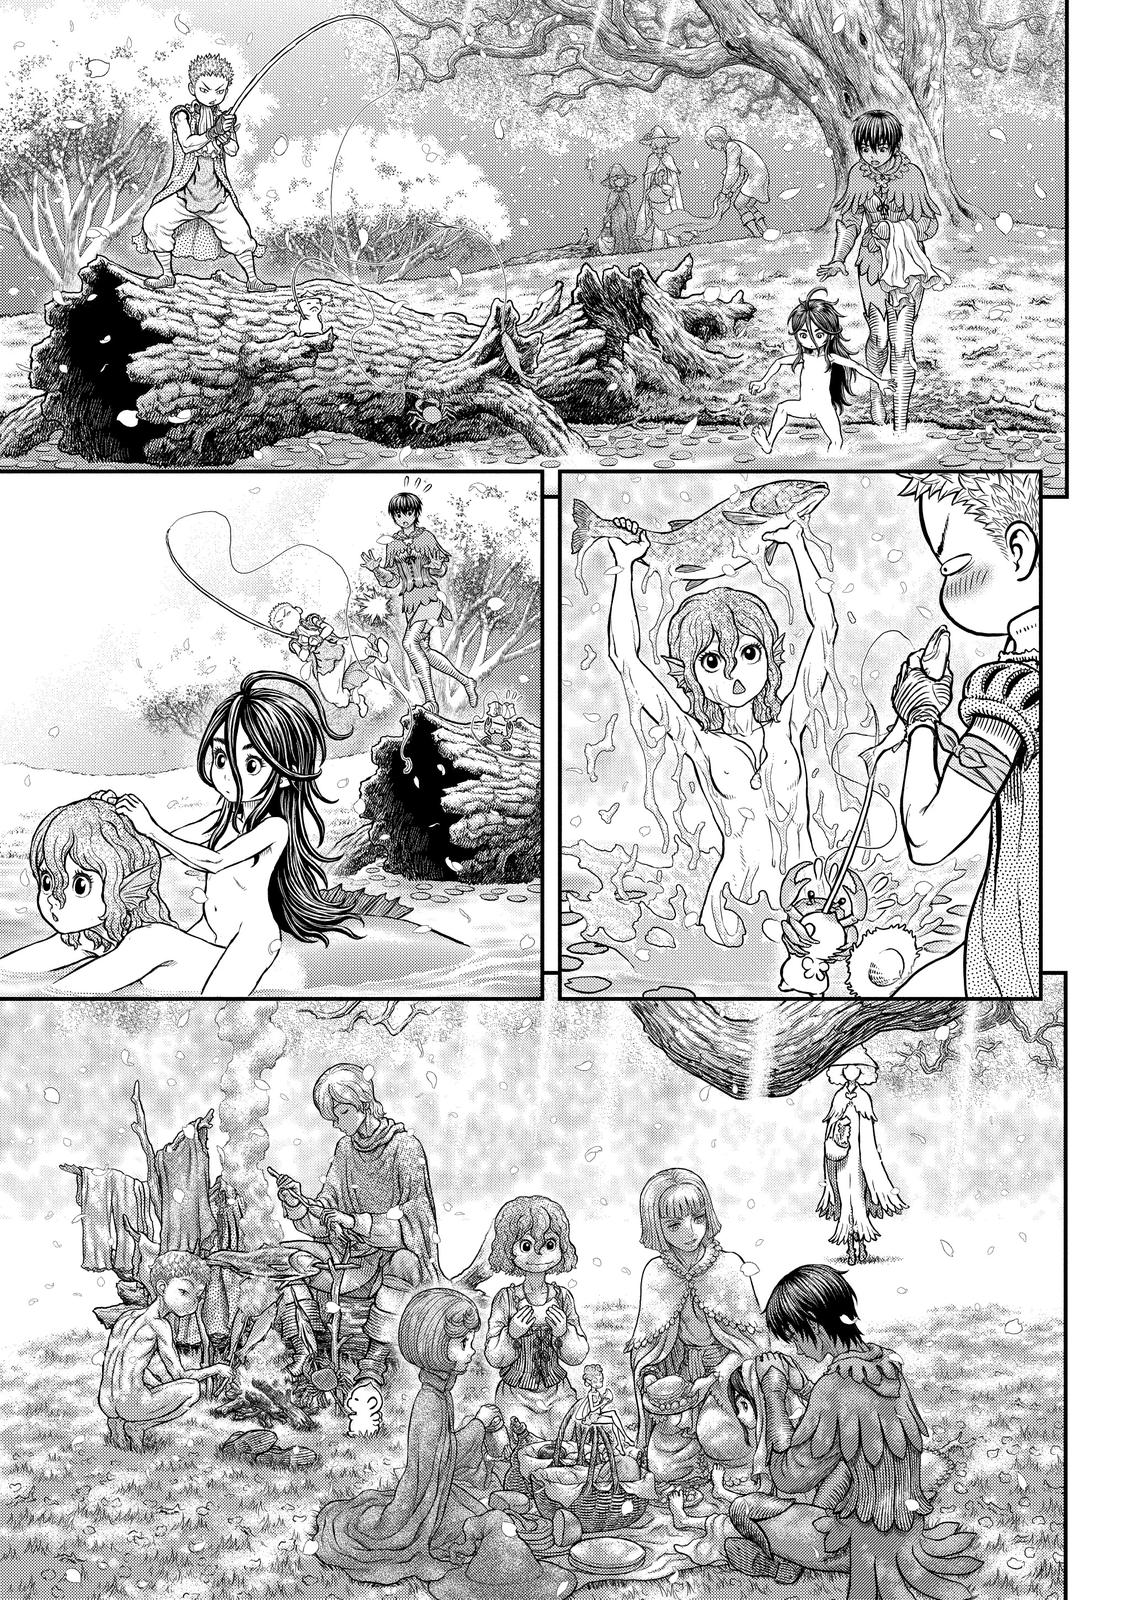 Berserk Manga Chapter 364 image 13